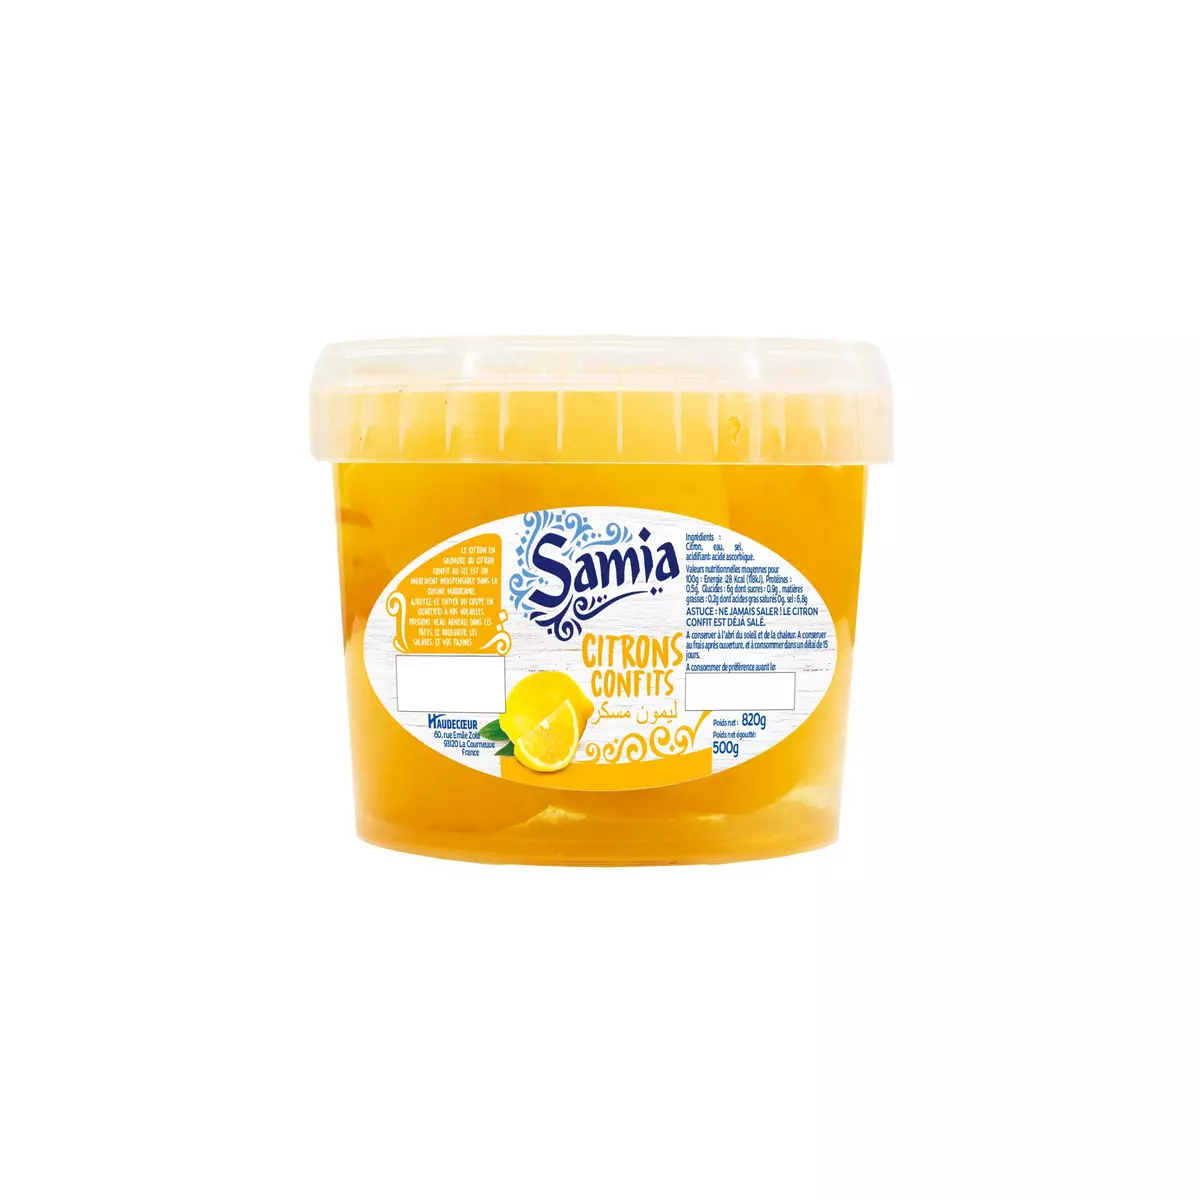 SAMIA citrons confits 820g